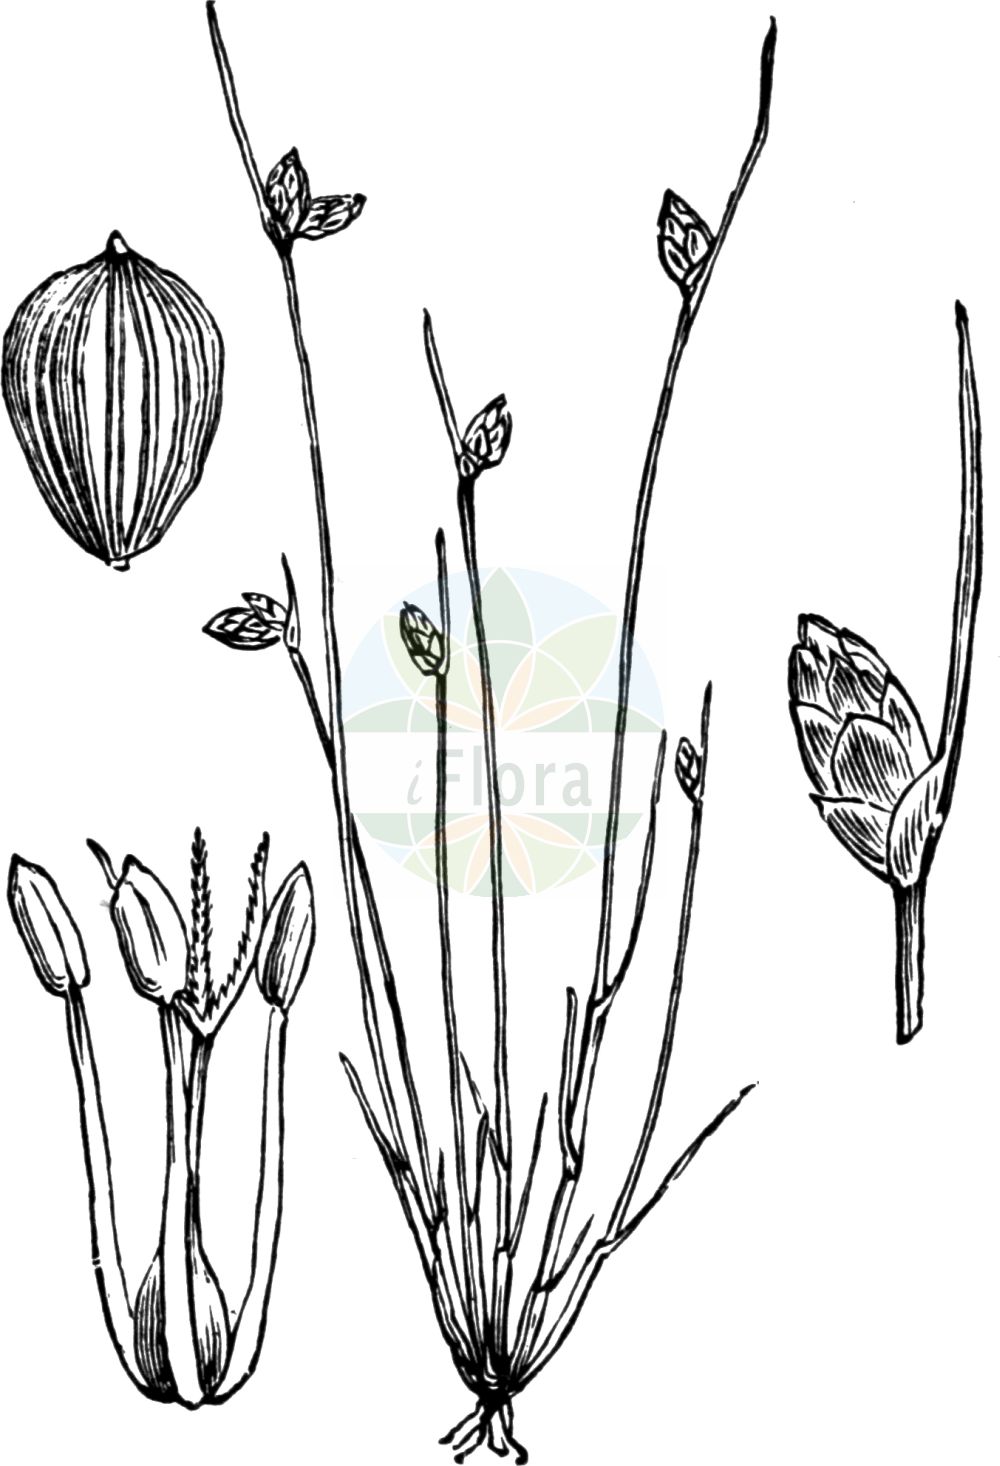 Historische Abbildung von Isolepis setacea (Borstige Moorbinse - Bristle Club-rush). Das Bild zeigt Blatt, Bluete, Frucht und Same. ---- Historical Drawing of Isolepis setacea (Borstige Moorbinse - Bristle Club-rush). The image is showing leaf, flower, fruit and seed.(Isolepis setacea,Borstige Moorbinse,Bristle Club-rush,Isolepis setacea,Scirpus setaceus,Borstige Moorbinse,Borsten-Moorbinse,Borstige Schuppensimse,Bristle Club-rush,Bristleleaf Bulrush,Isolepis,Moorbinse,Bulrush,Cyperaceae,Sauergräser,Sedge family,Blatt,Bluete,Frucht,Same,leaf,flower,fruit,seed,Fitch et al. (1880))